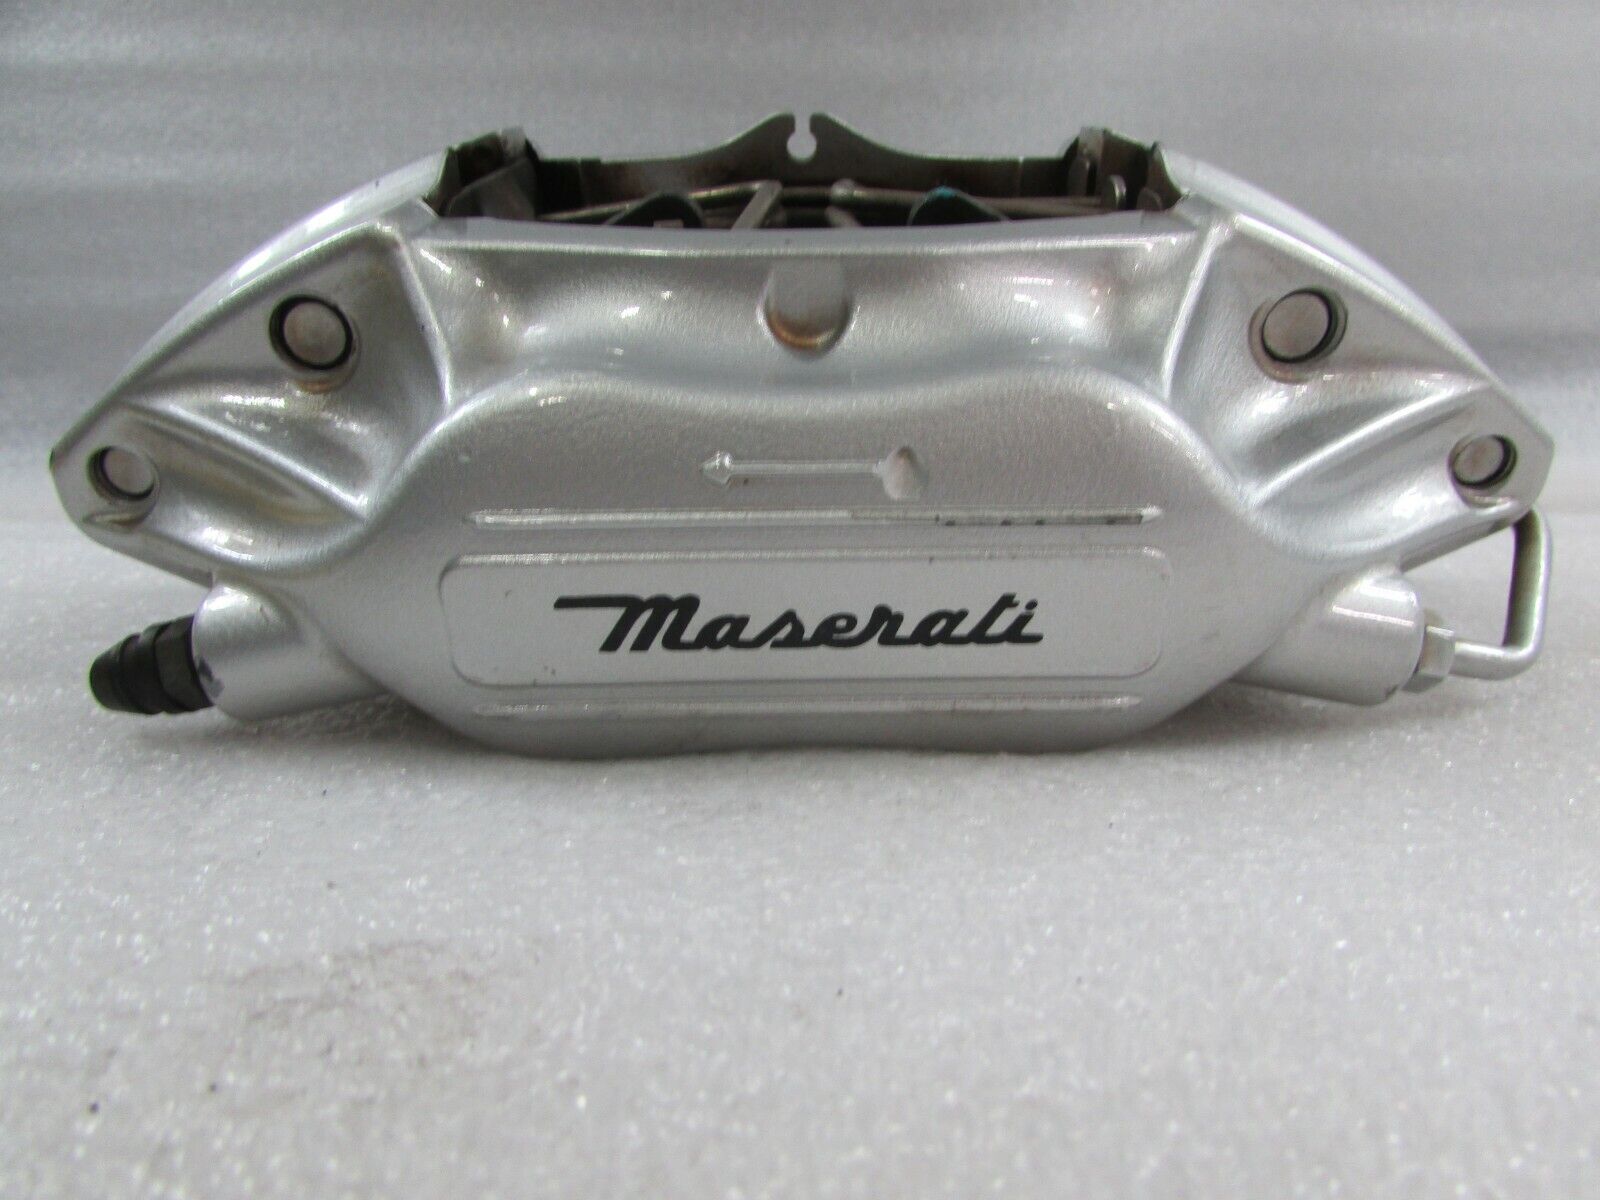 Maserati Coupe,Spyder, GS, RH, Right Rear Brake Caliper, Silver Used, P/N 200055